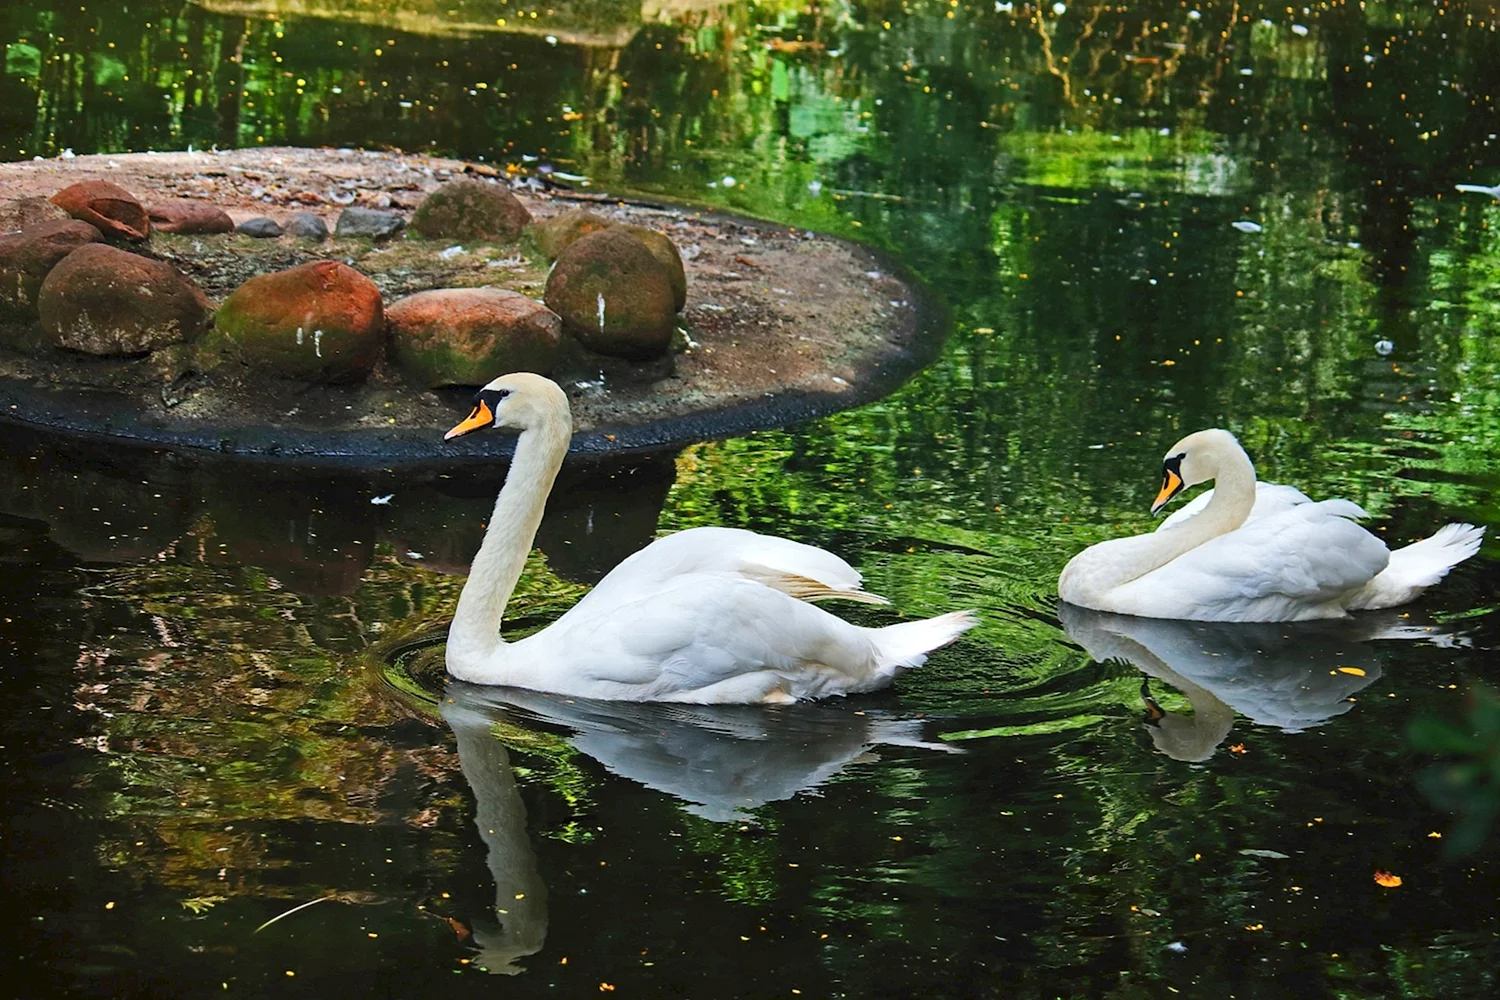 «Лебеди в пруду» Василе Паскару